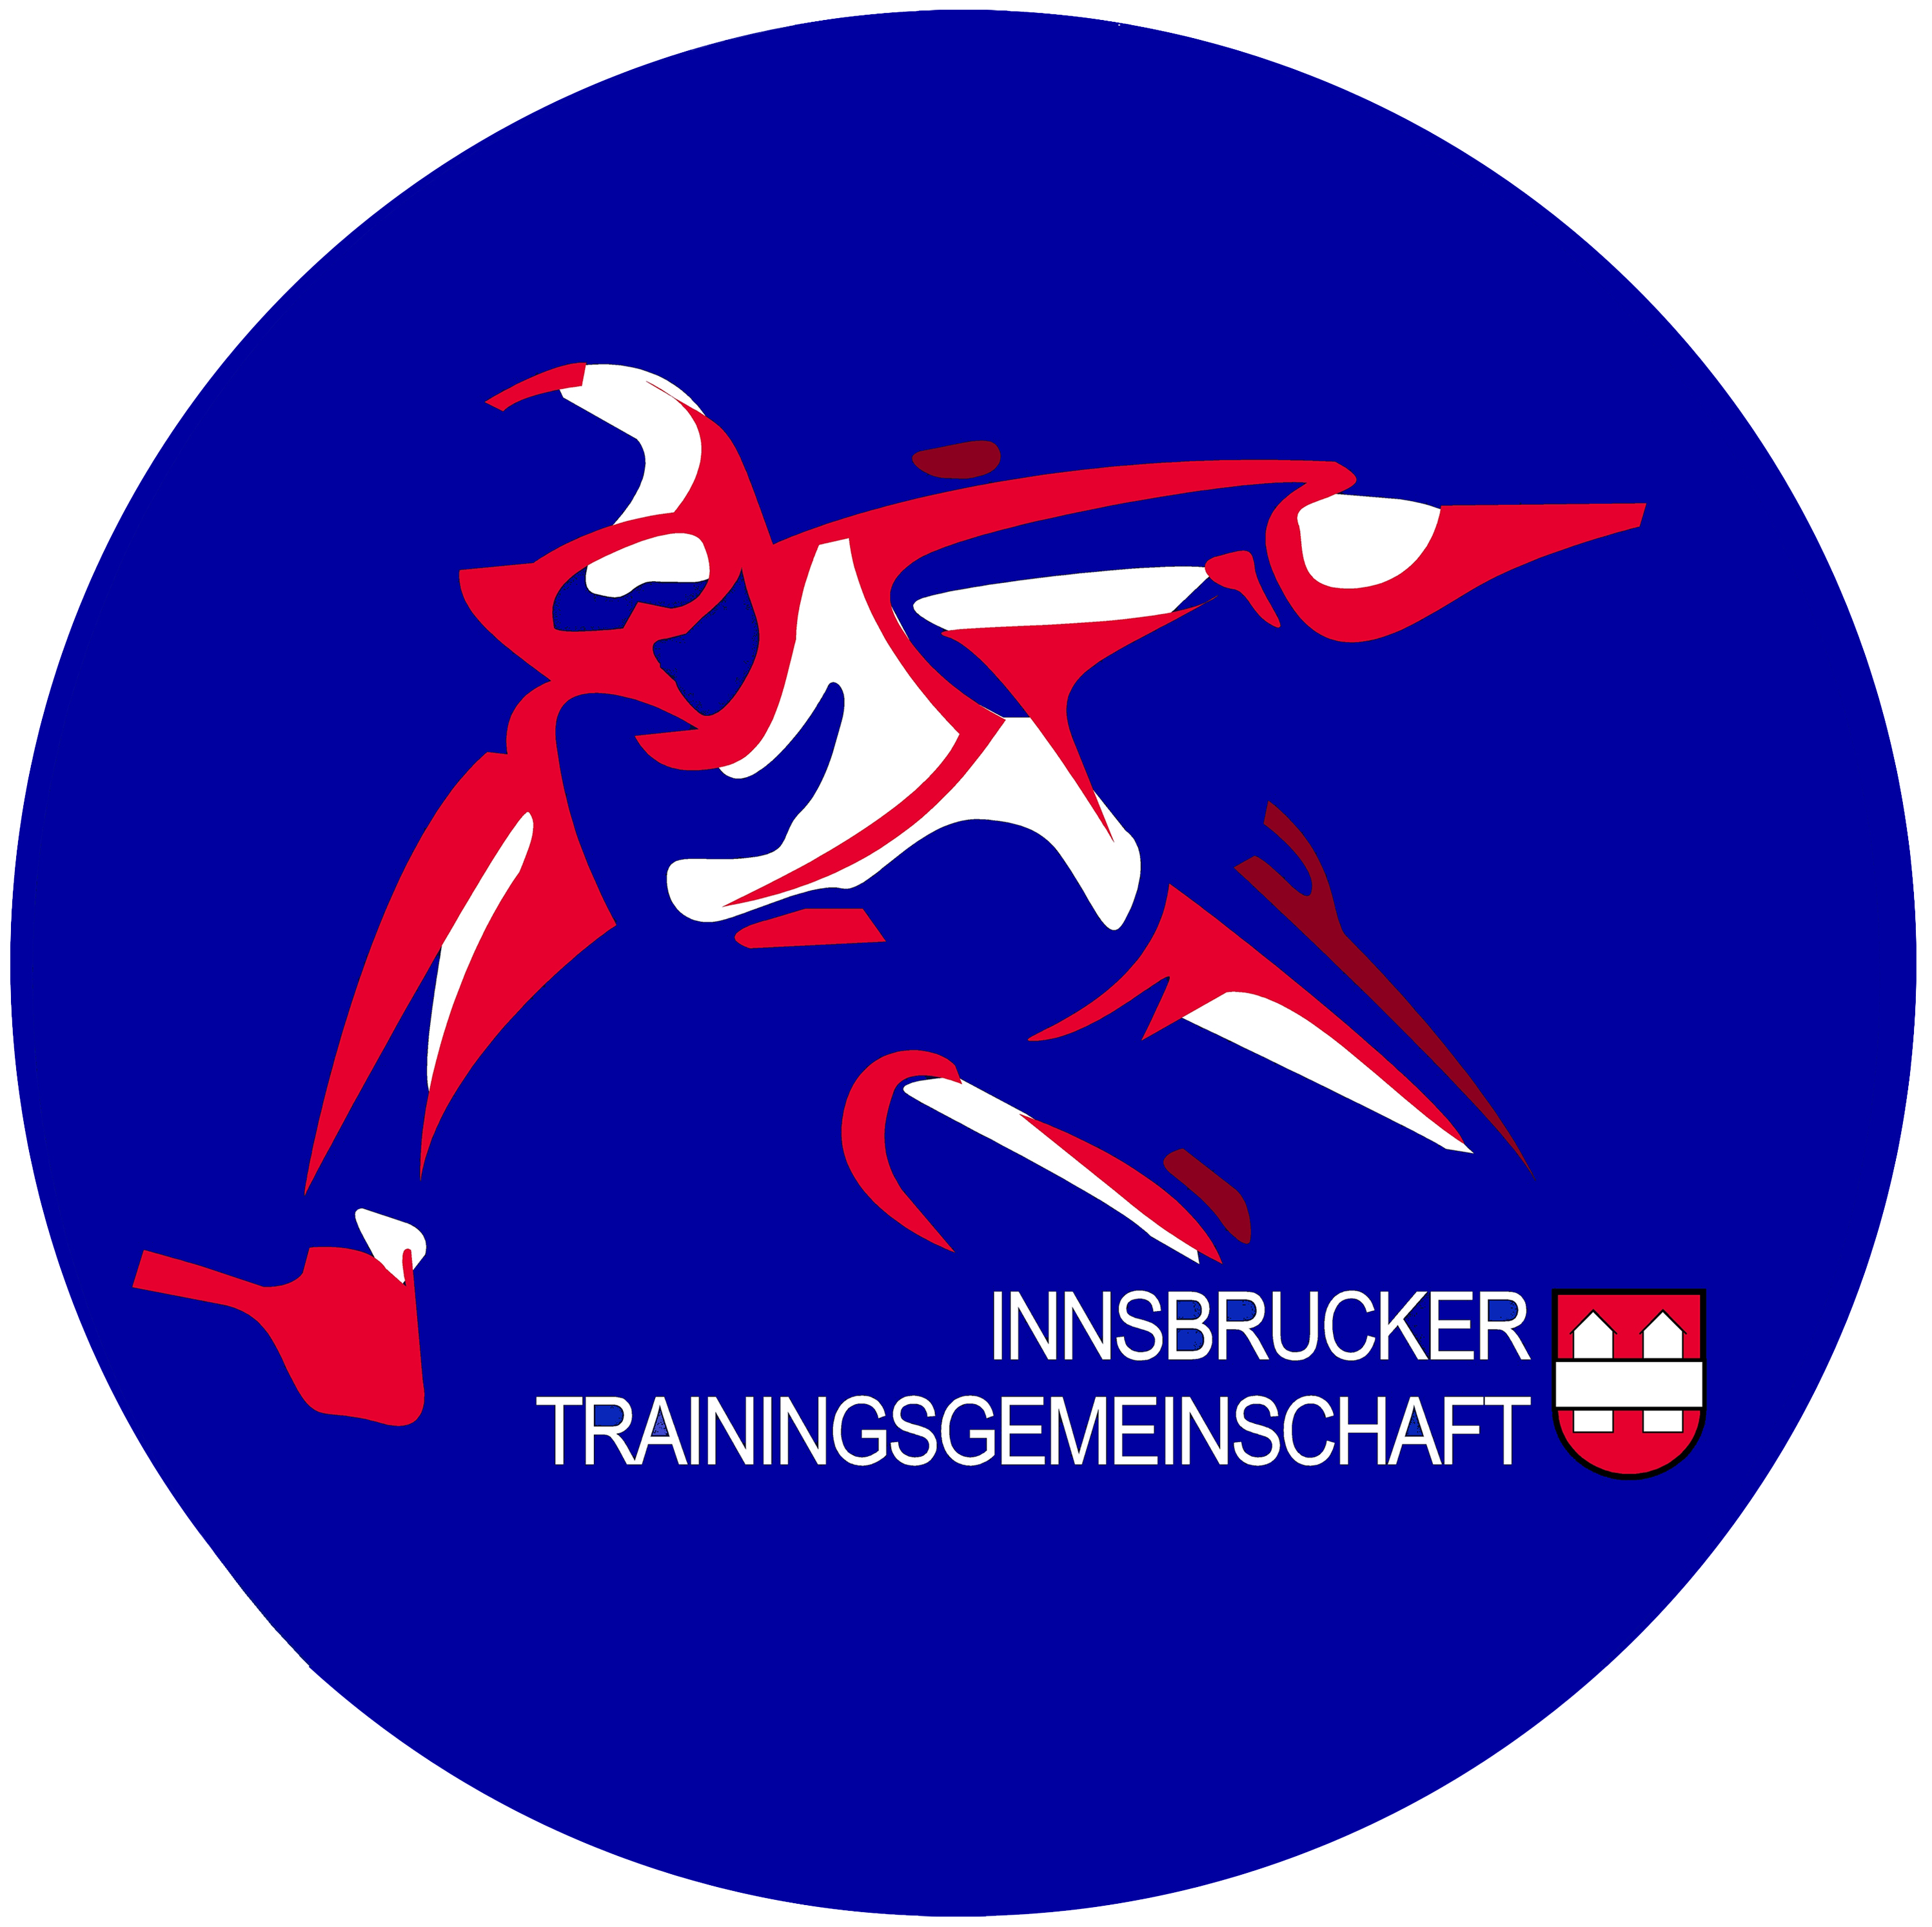 ITG - Innsbrucker Trainings Gemeinschaft